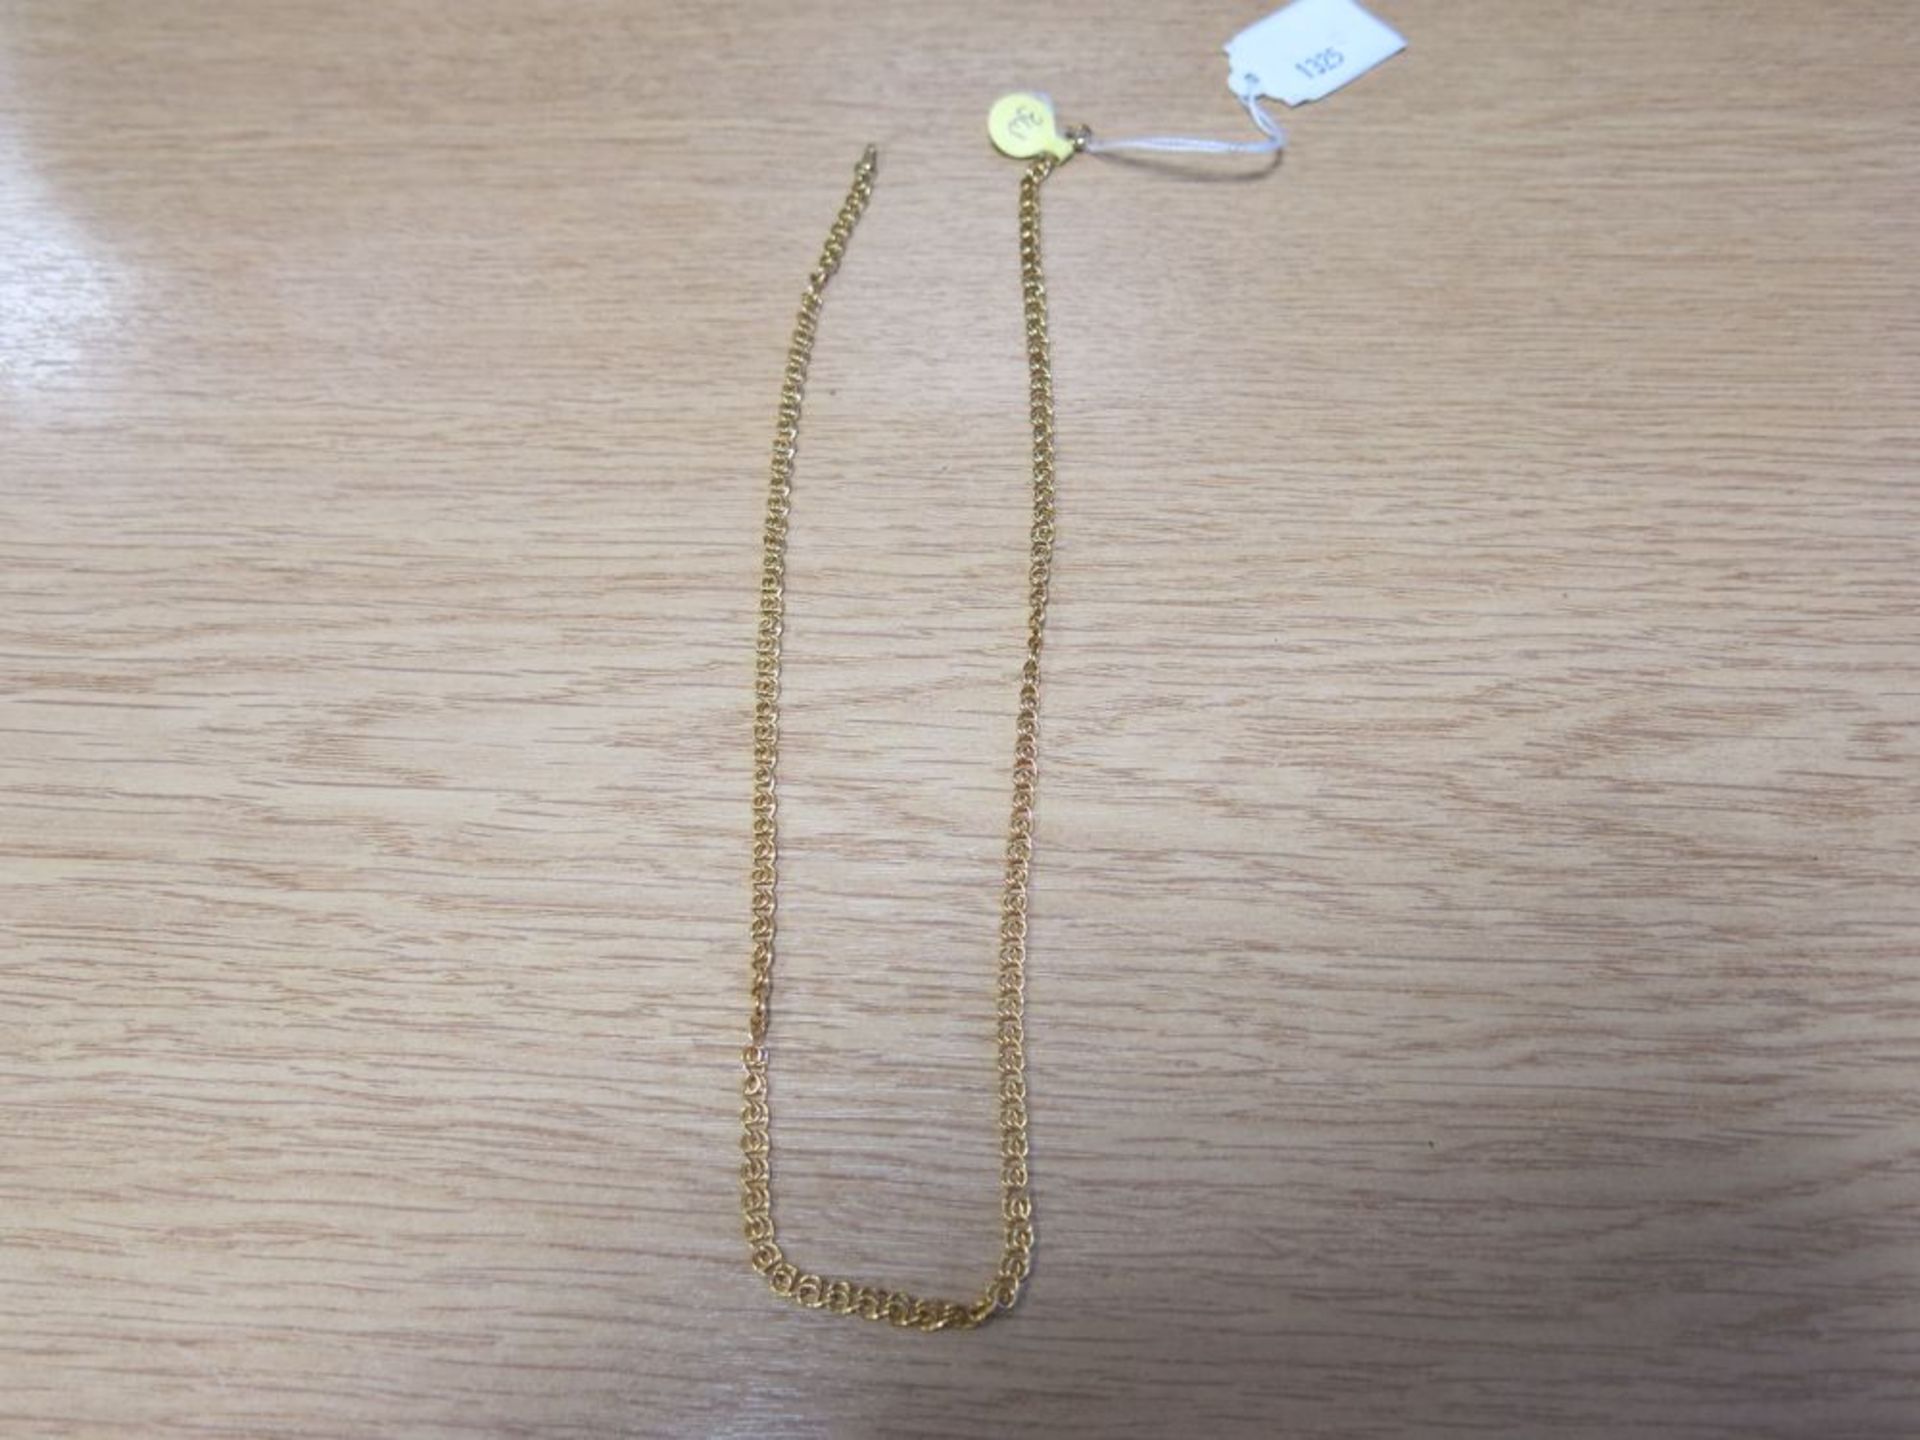 A 9ct Gold Neck Chain, 46cm, 3.5gms (est. £30-£60)